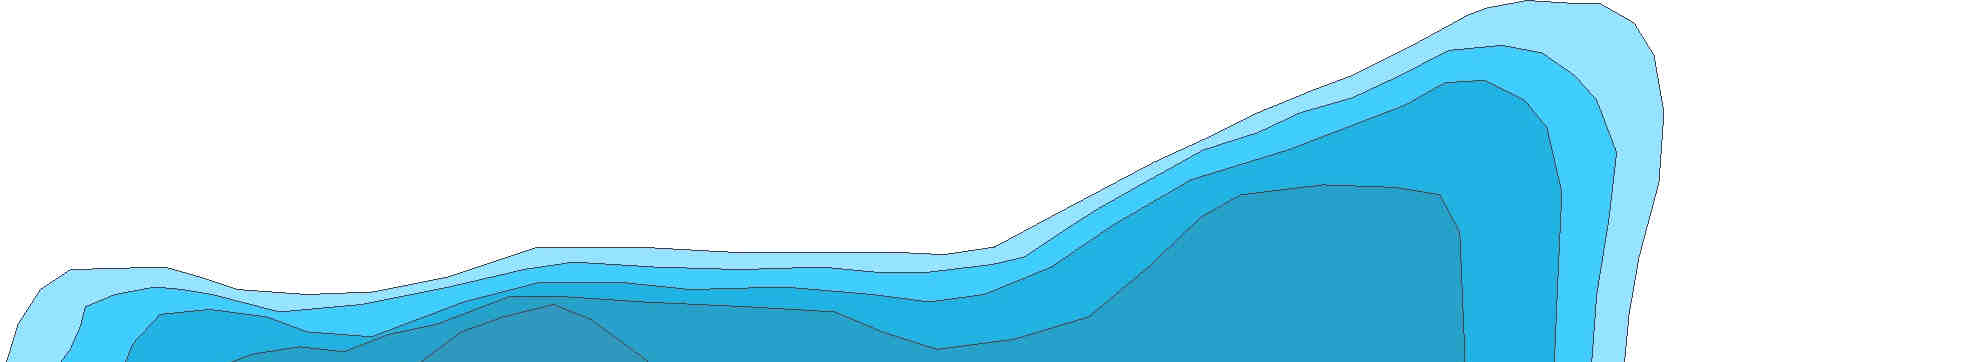 Badania w 2004 roku były podstawą oceny aktualnego stanu czystości wód jeziora i wpisały się w cykl obserwacji jeziora Głęboczek, prowadzony w związku z podjętą rekultywacją tego zbiornika,